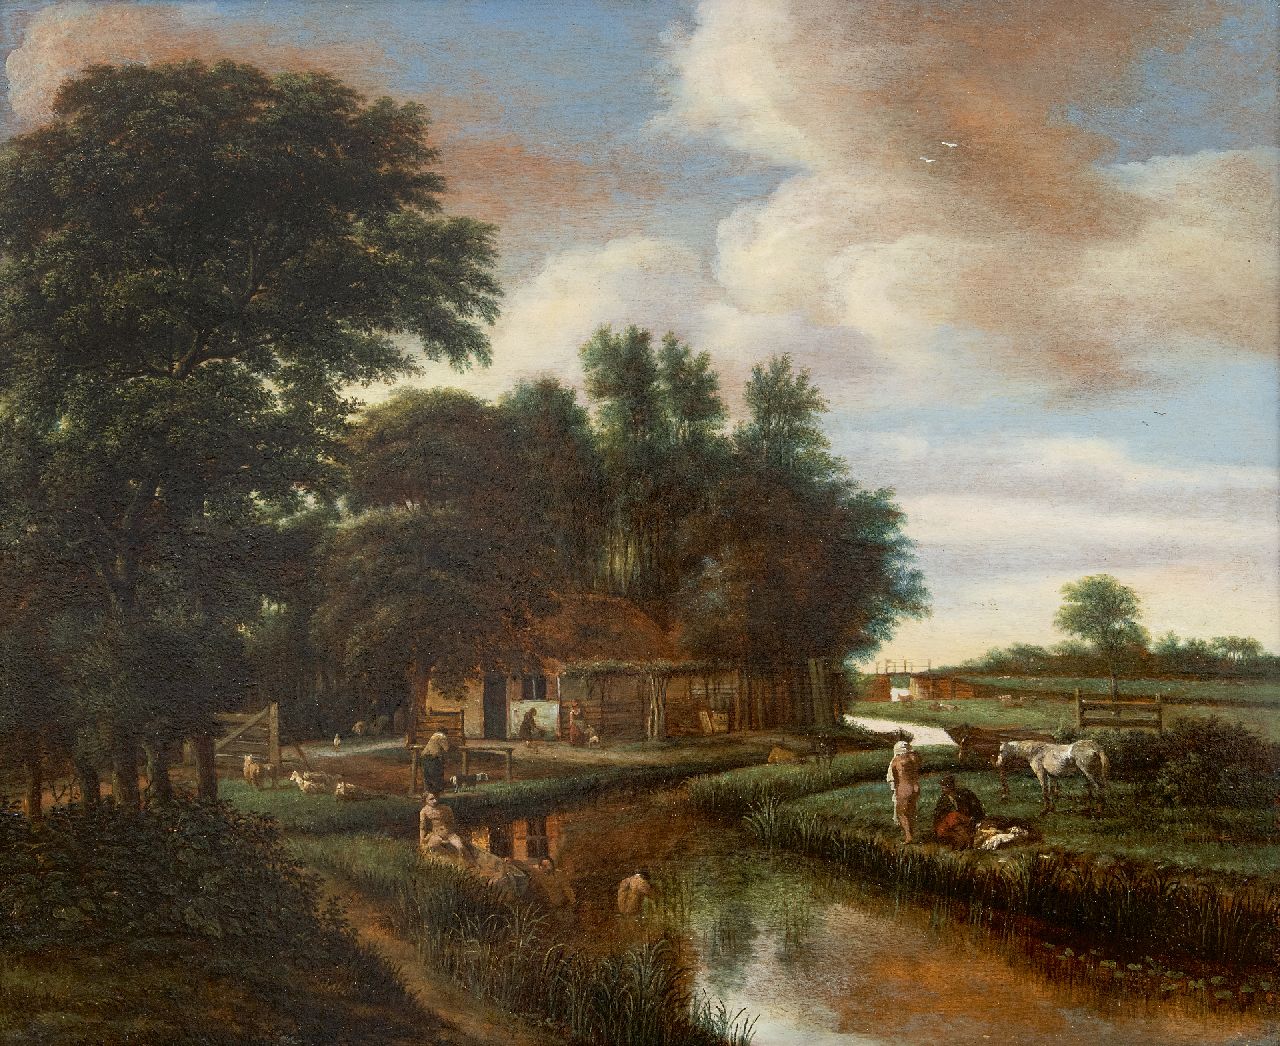 Pieter van Asch | Naakte baders in een riviertje nabij een boerderij, olieverf op paneel, 42,0 x 51,5 cm, gesigneerd l.o. met monogram